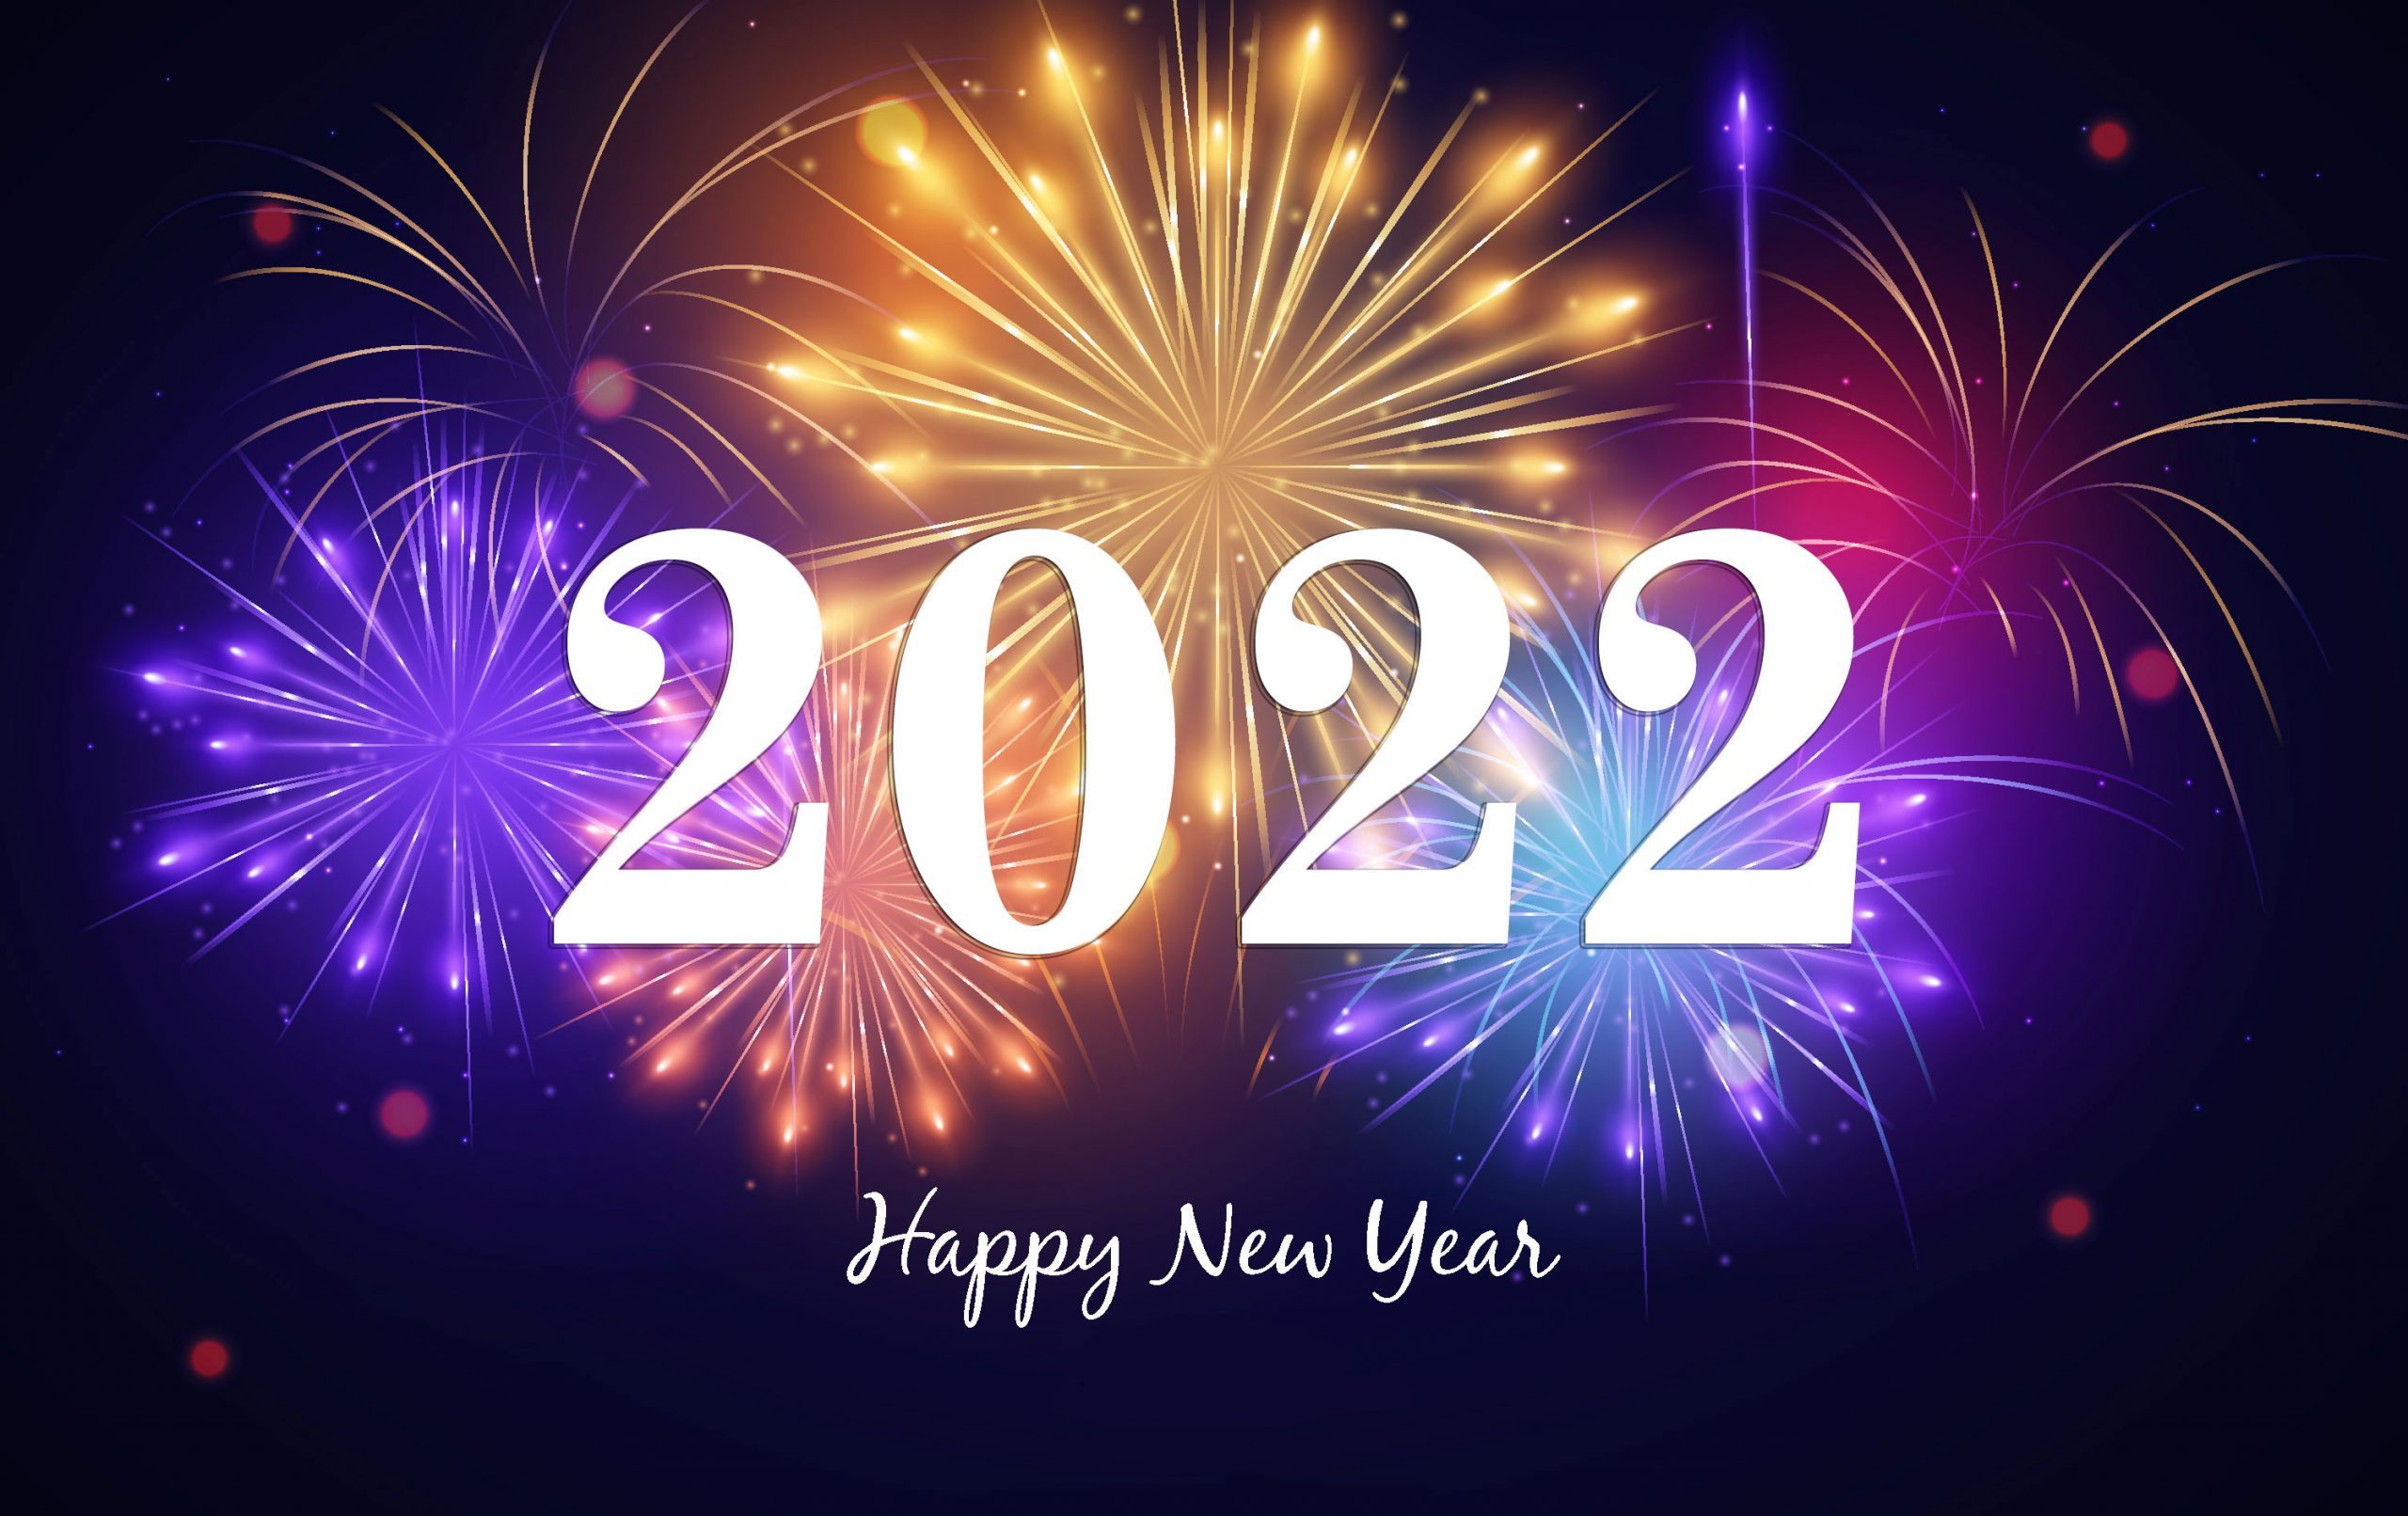 العام الجديد 2022